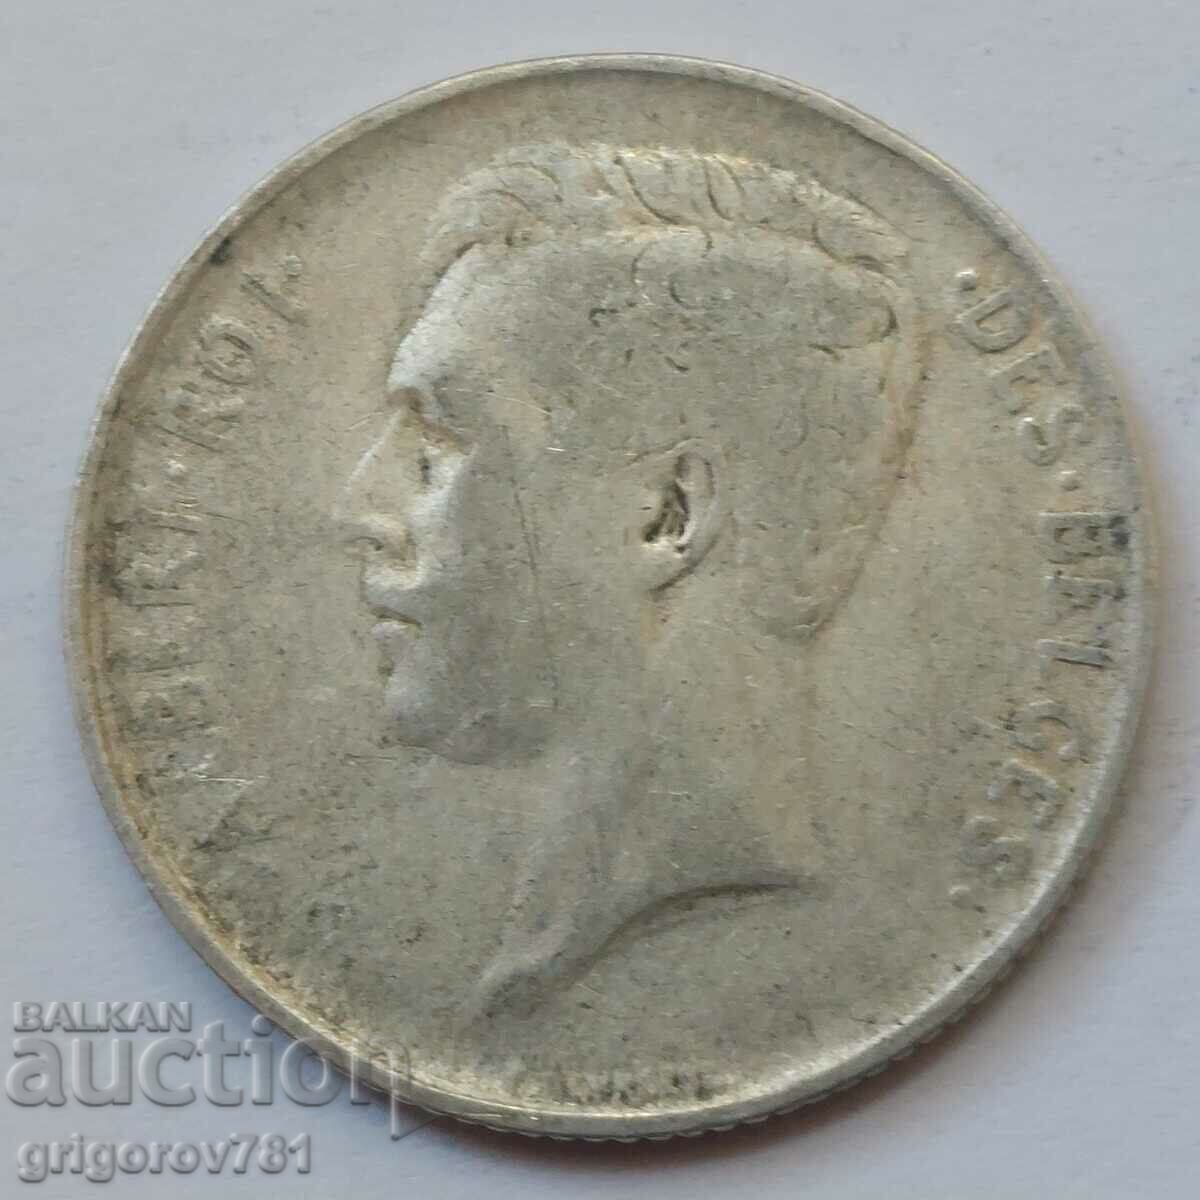 Ασημένιο 1 φράγκου Βέλγιο 1913 - ασημένιο νόμισμα #66